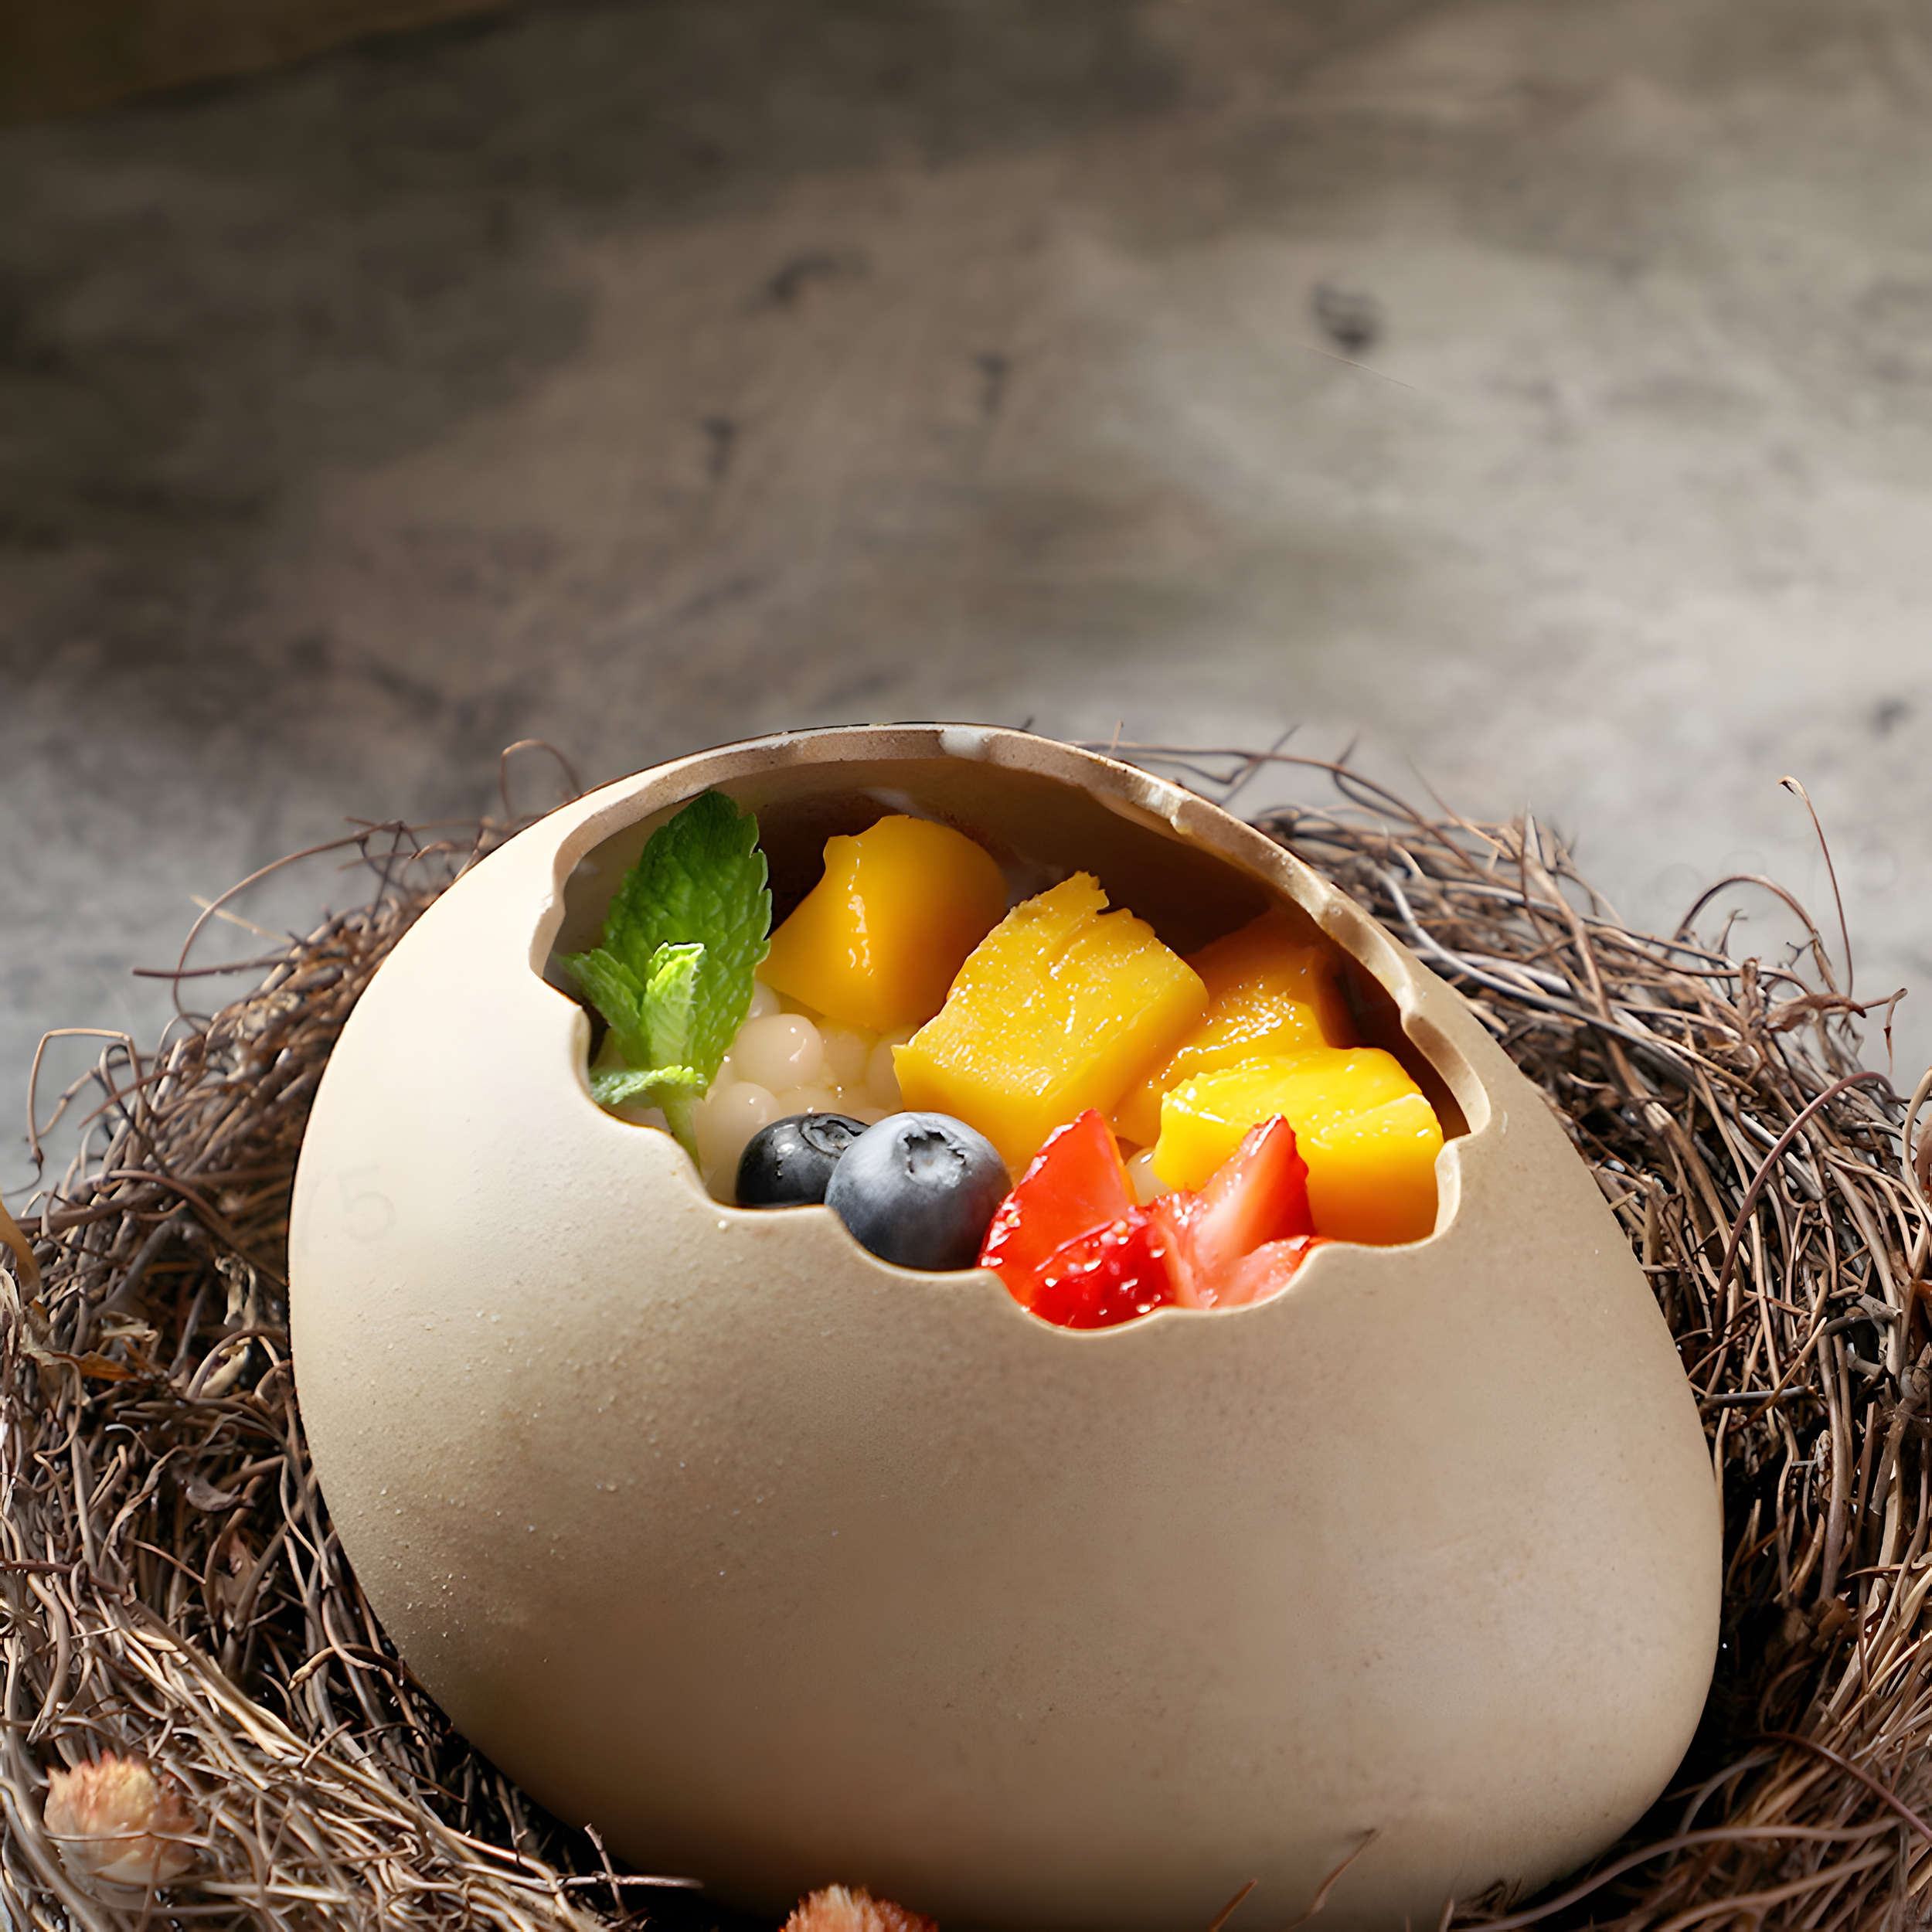 鸟窝鸡蛋陶瓷碗冷饮烧烤创意特色意境菜甜品分子料理蒸蛋餐厅餐具